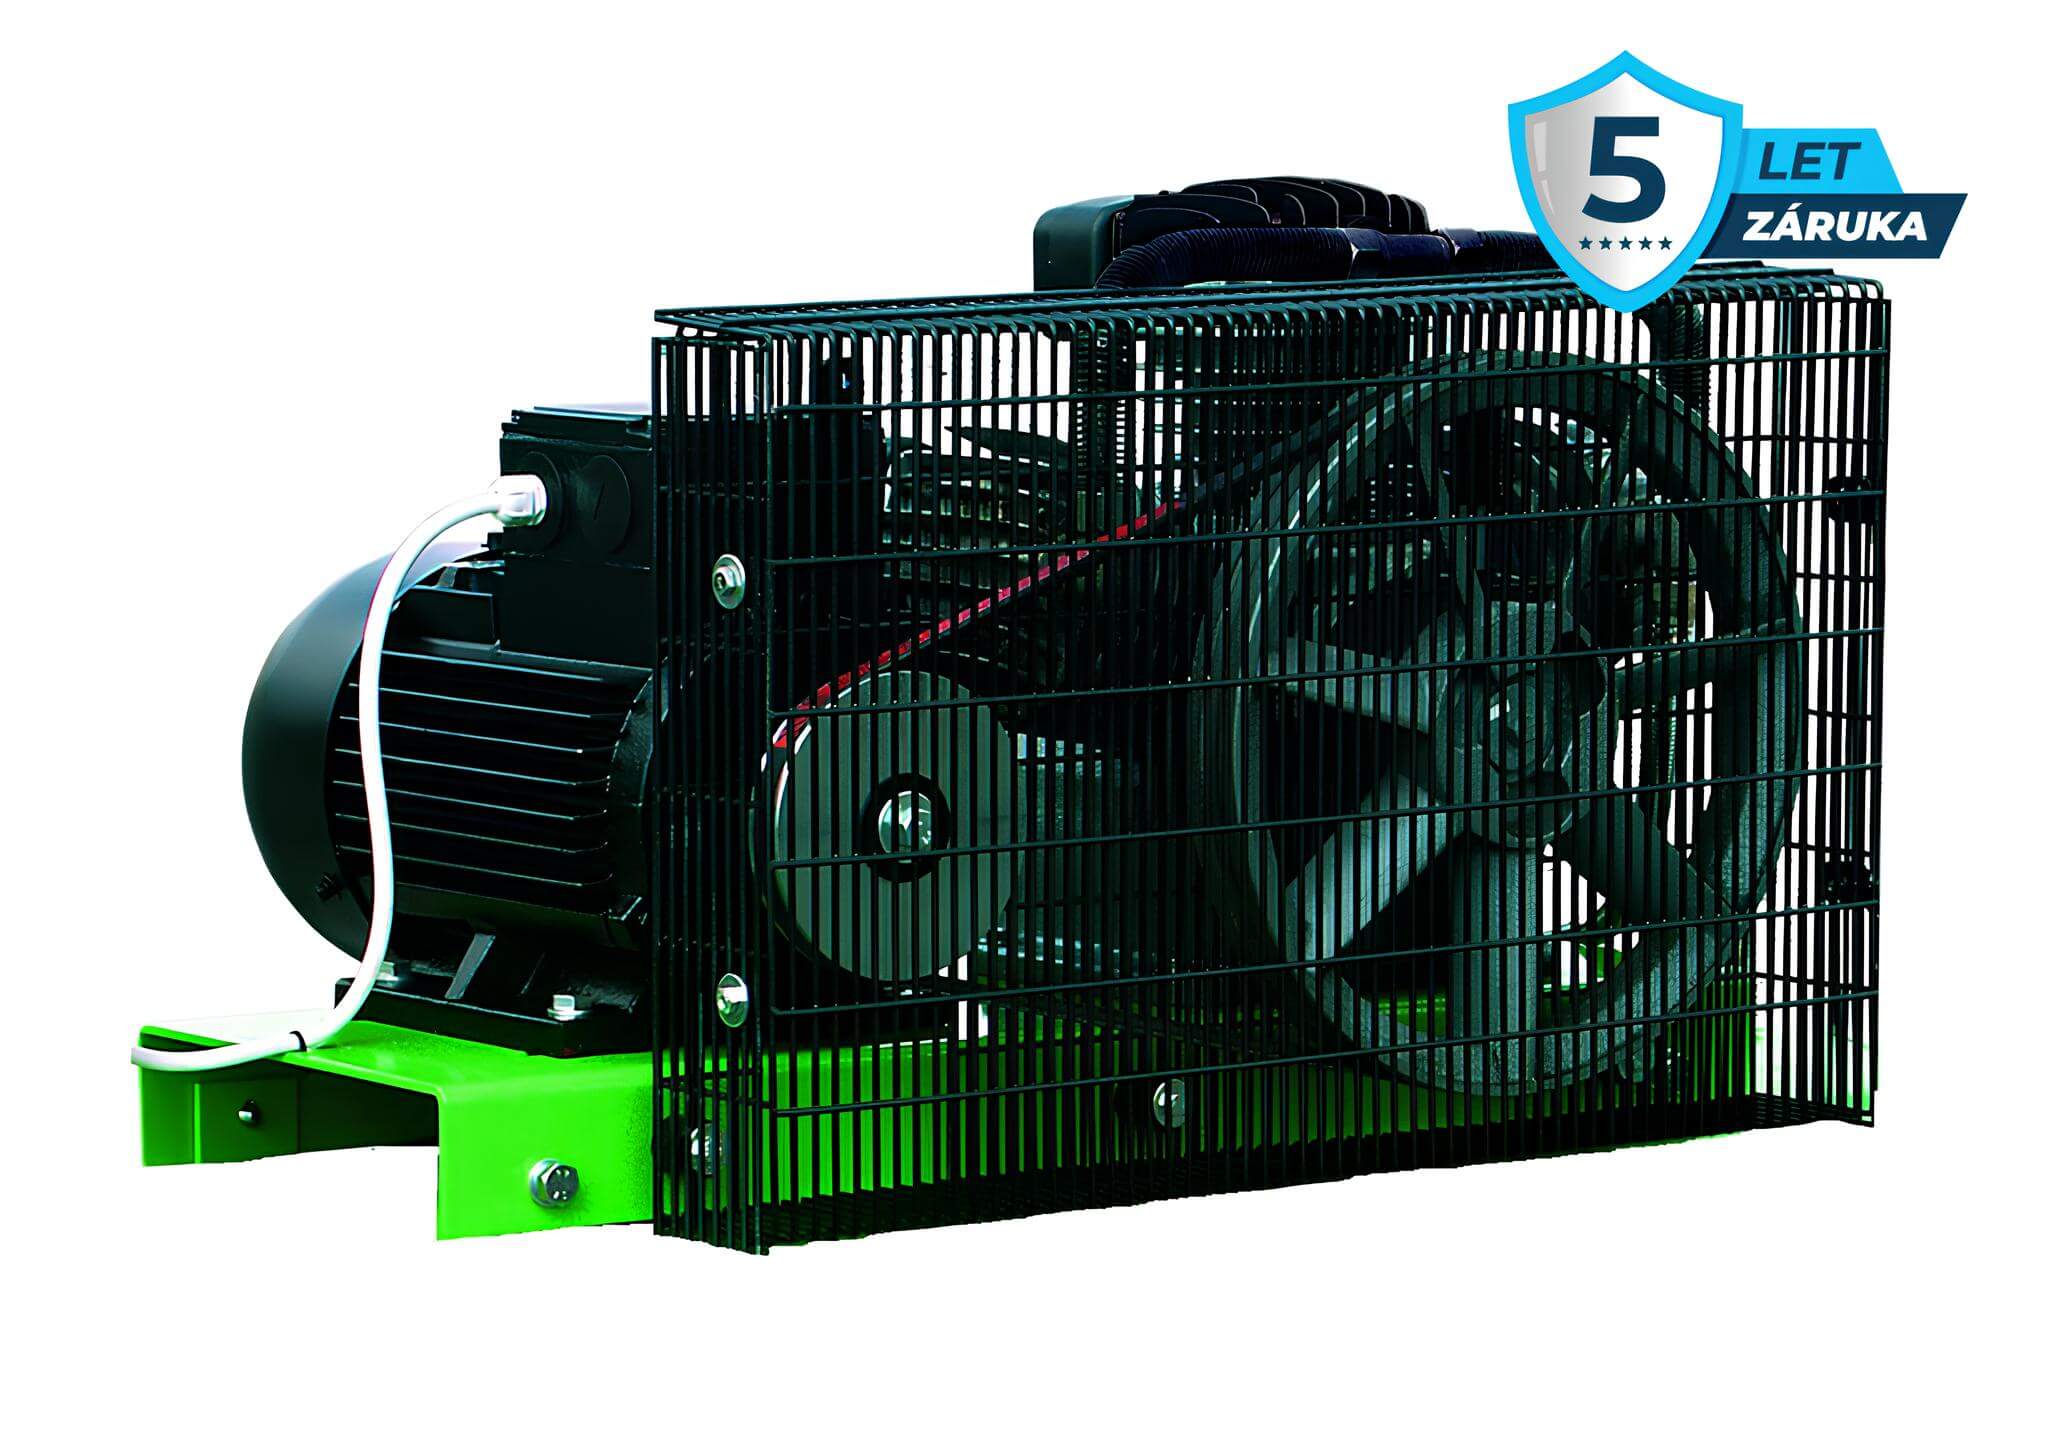 Atmos Pístový kompresor Perfect - 7,5PFT příkon 7,5 kW, výkon 920 l/min, tlak 10 bar, vzdušník 0 l, napětí 400/50 V/Hz